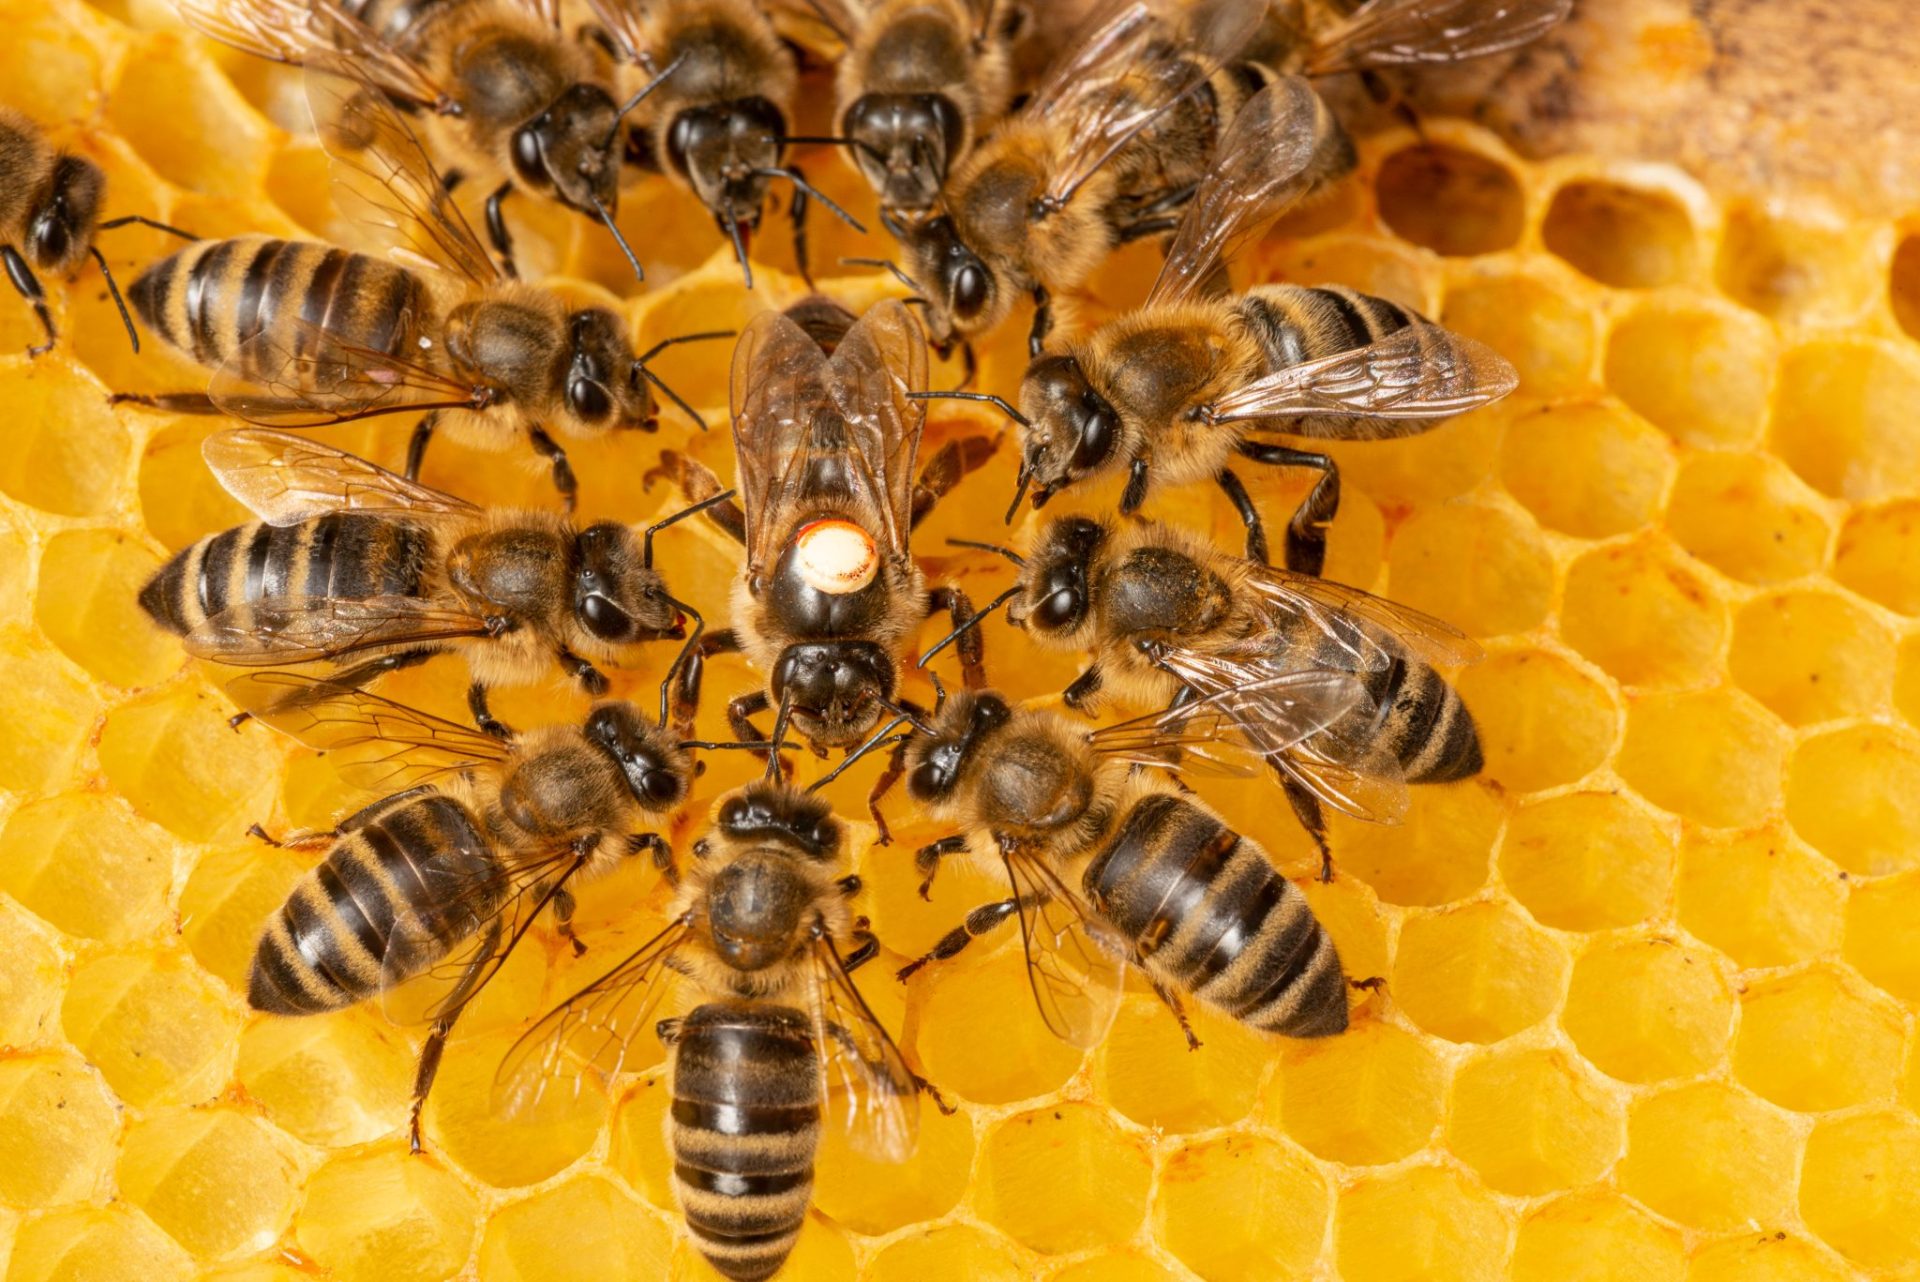 Honeybee Life Cycle - The Queen